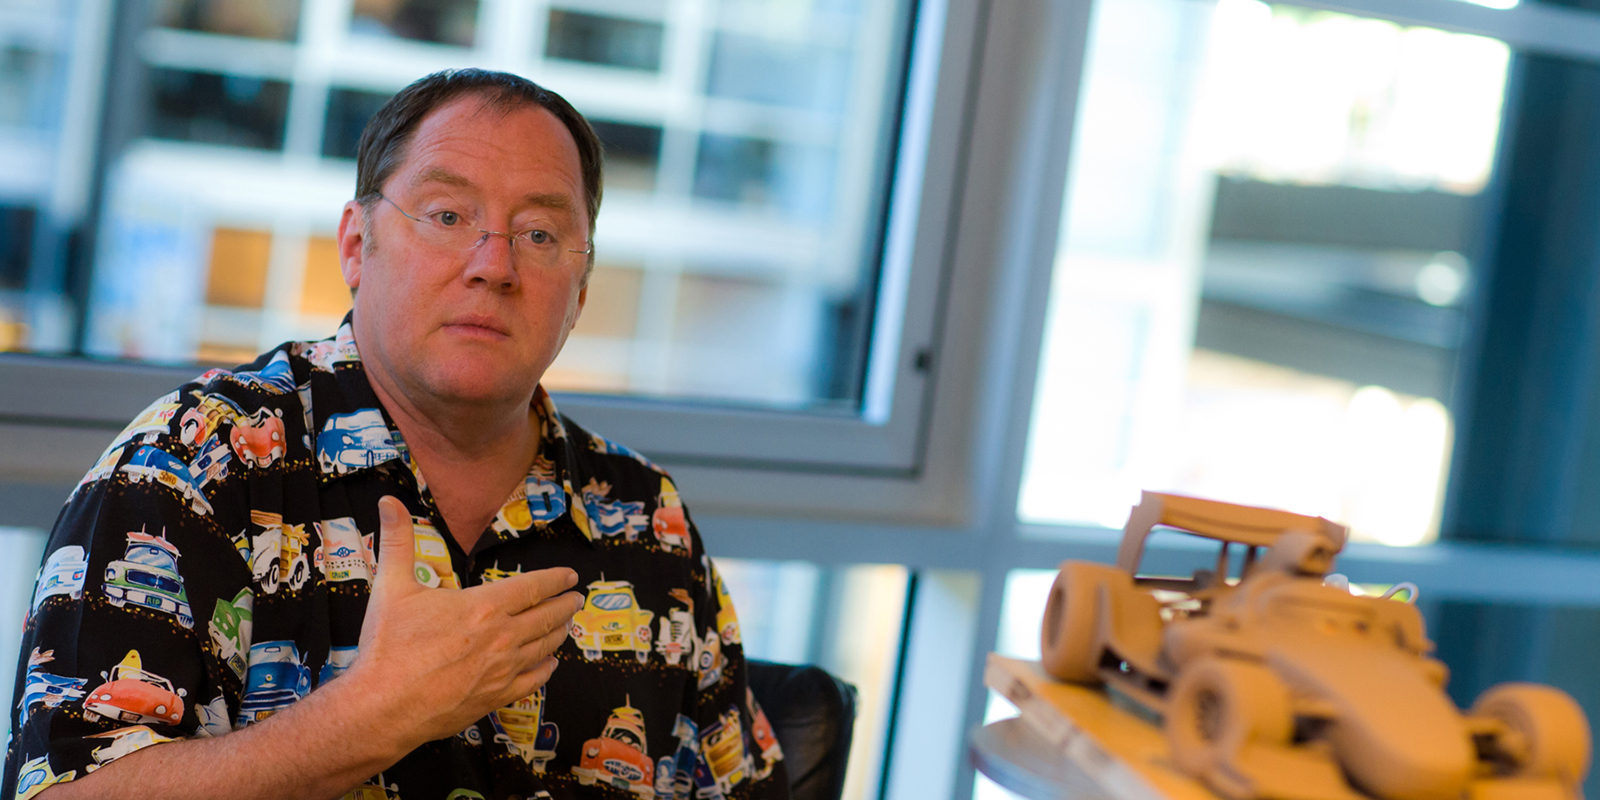 John Lasseter deja temporalmente Pixar después de acusaciones de acoso